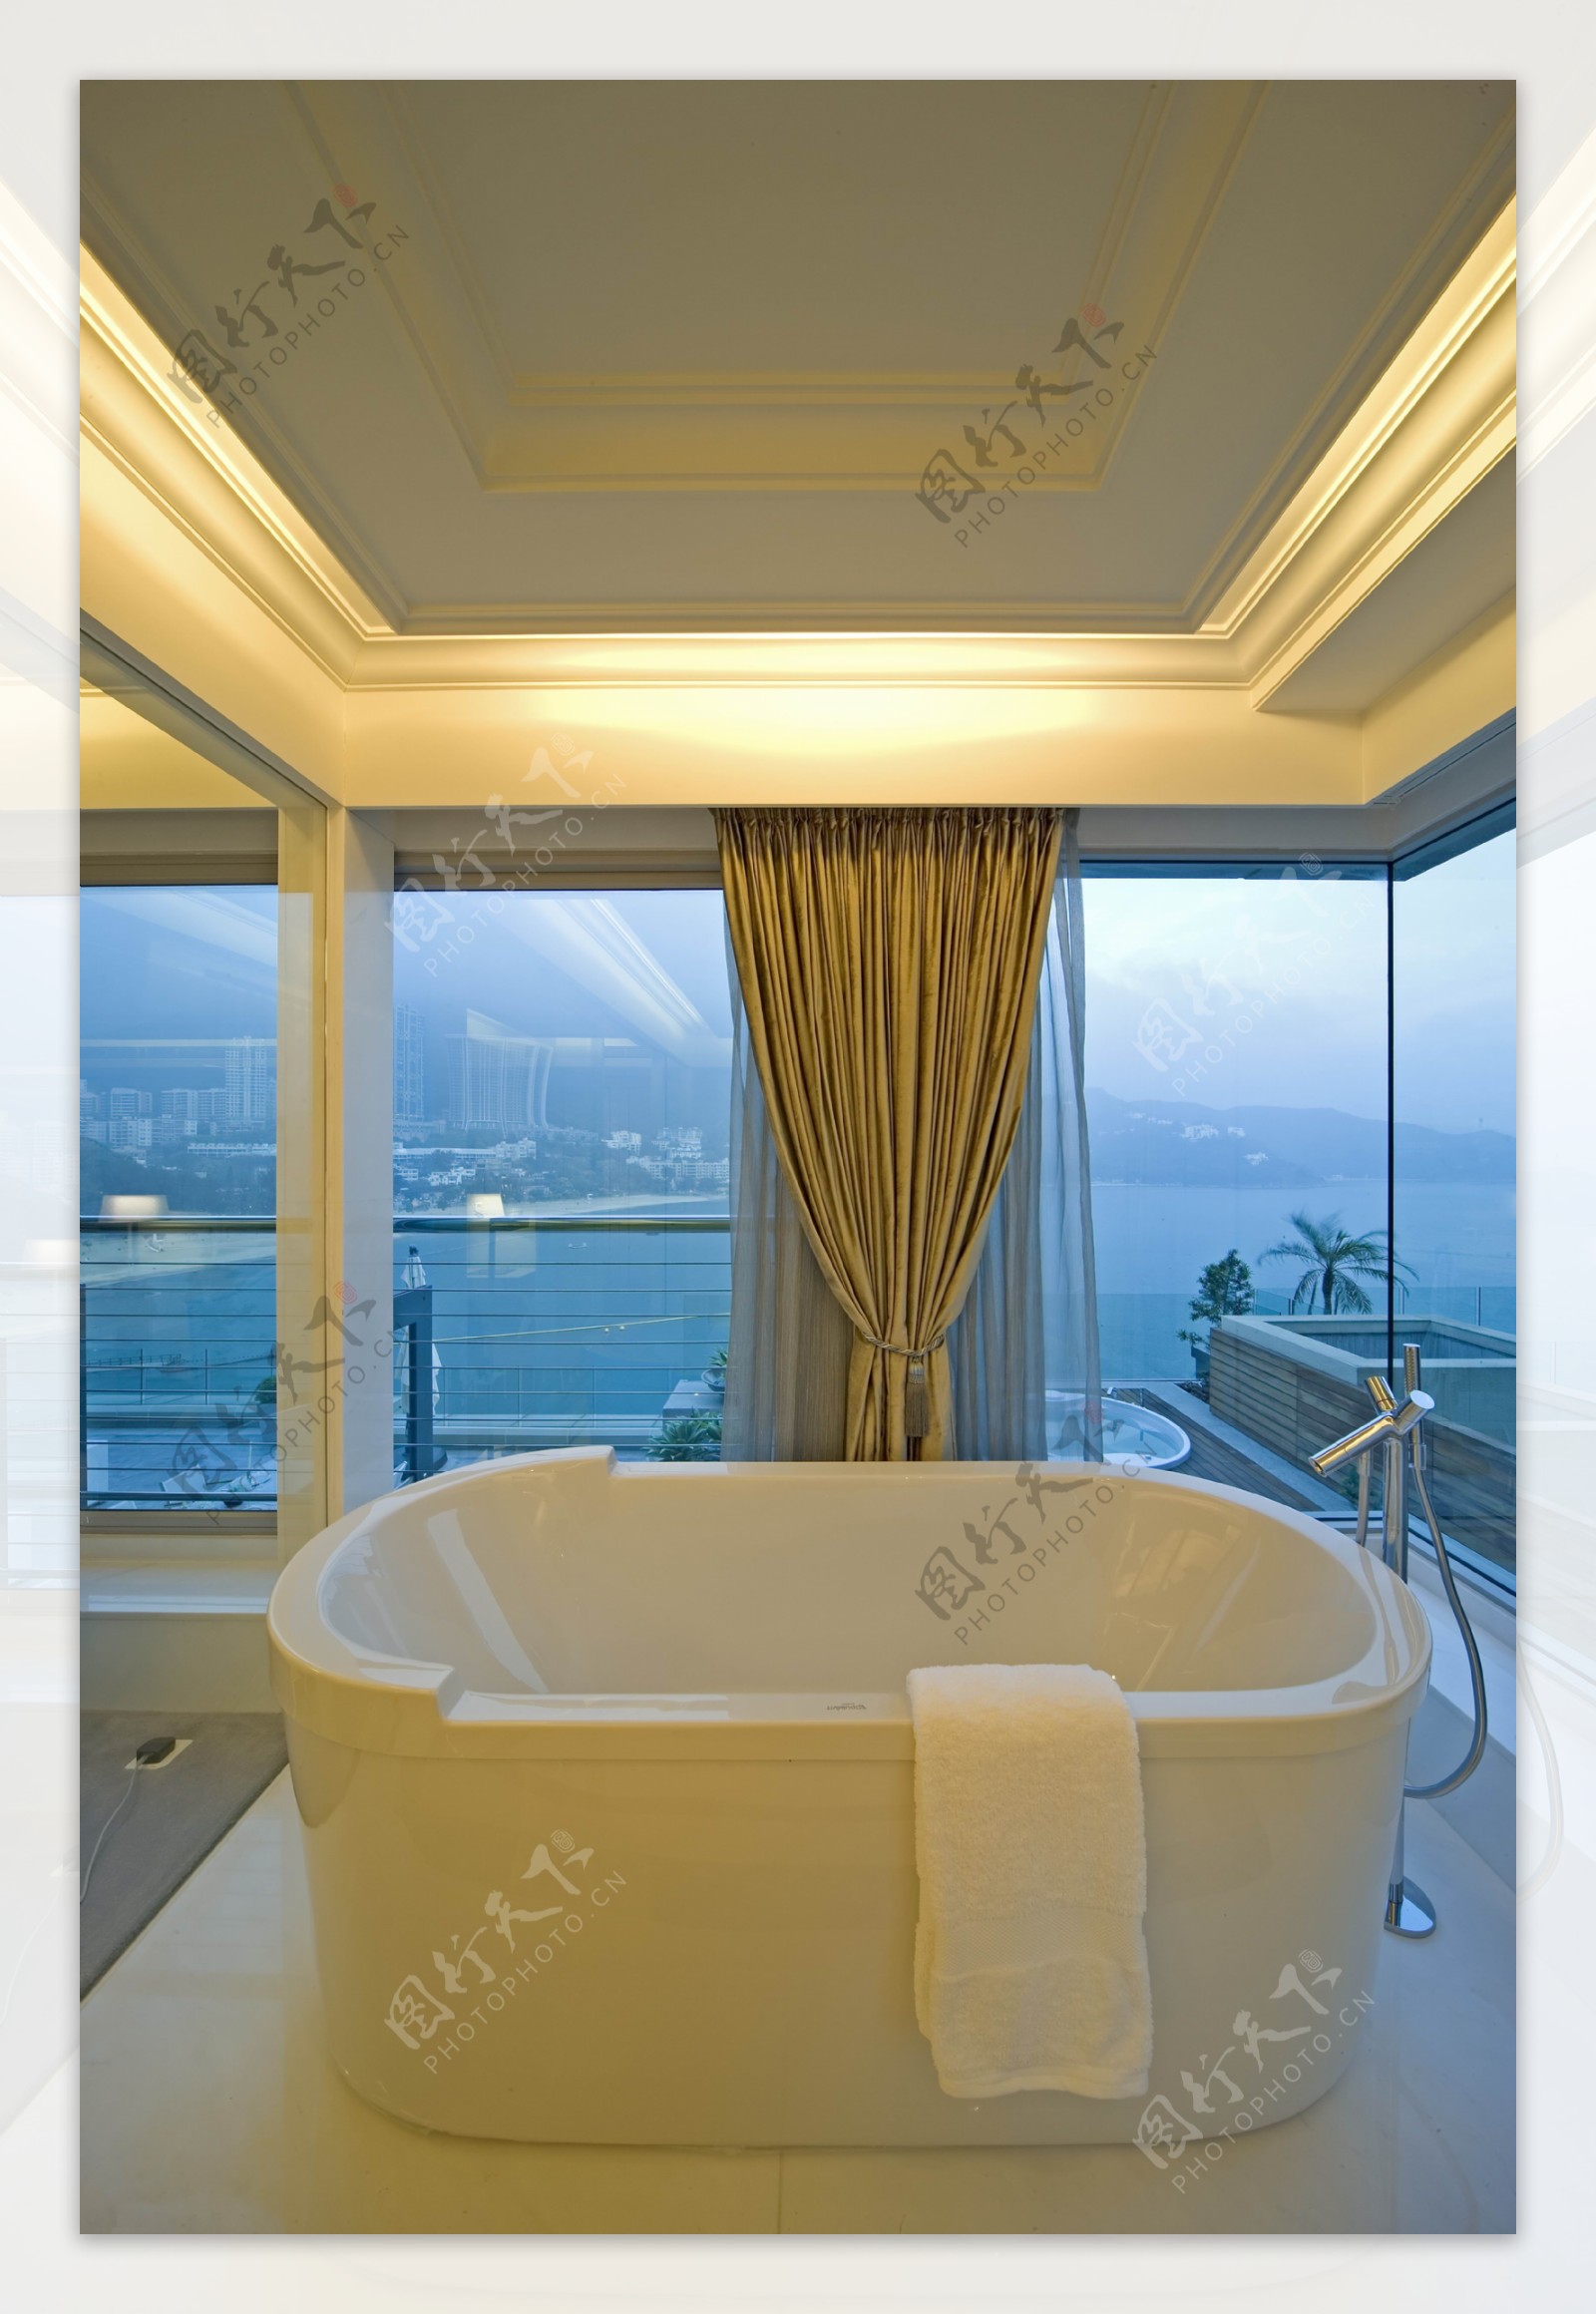 海边浴缸豪华窗帘装修效果图